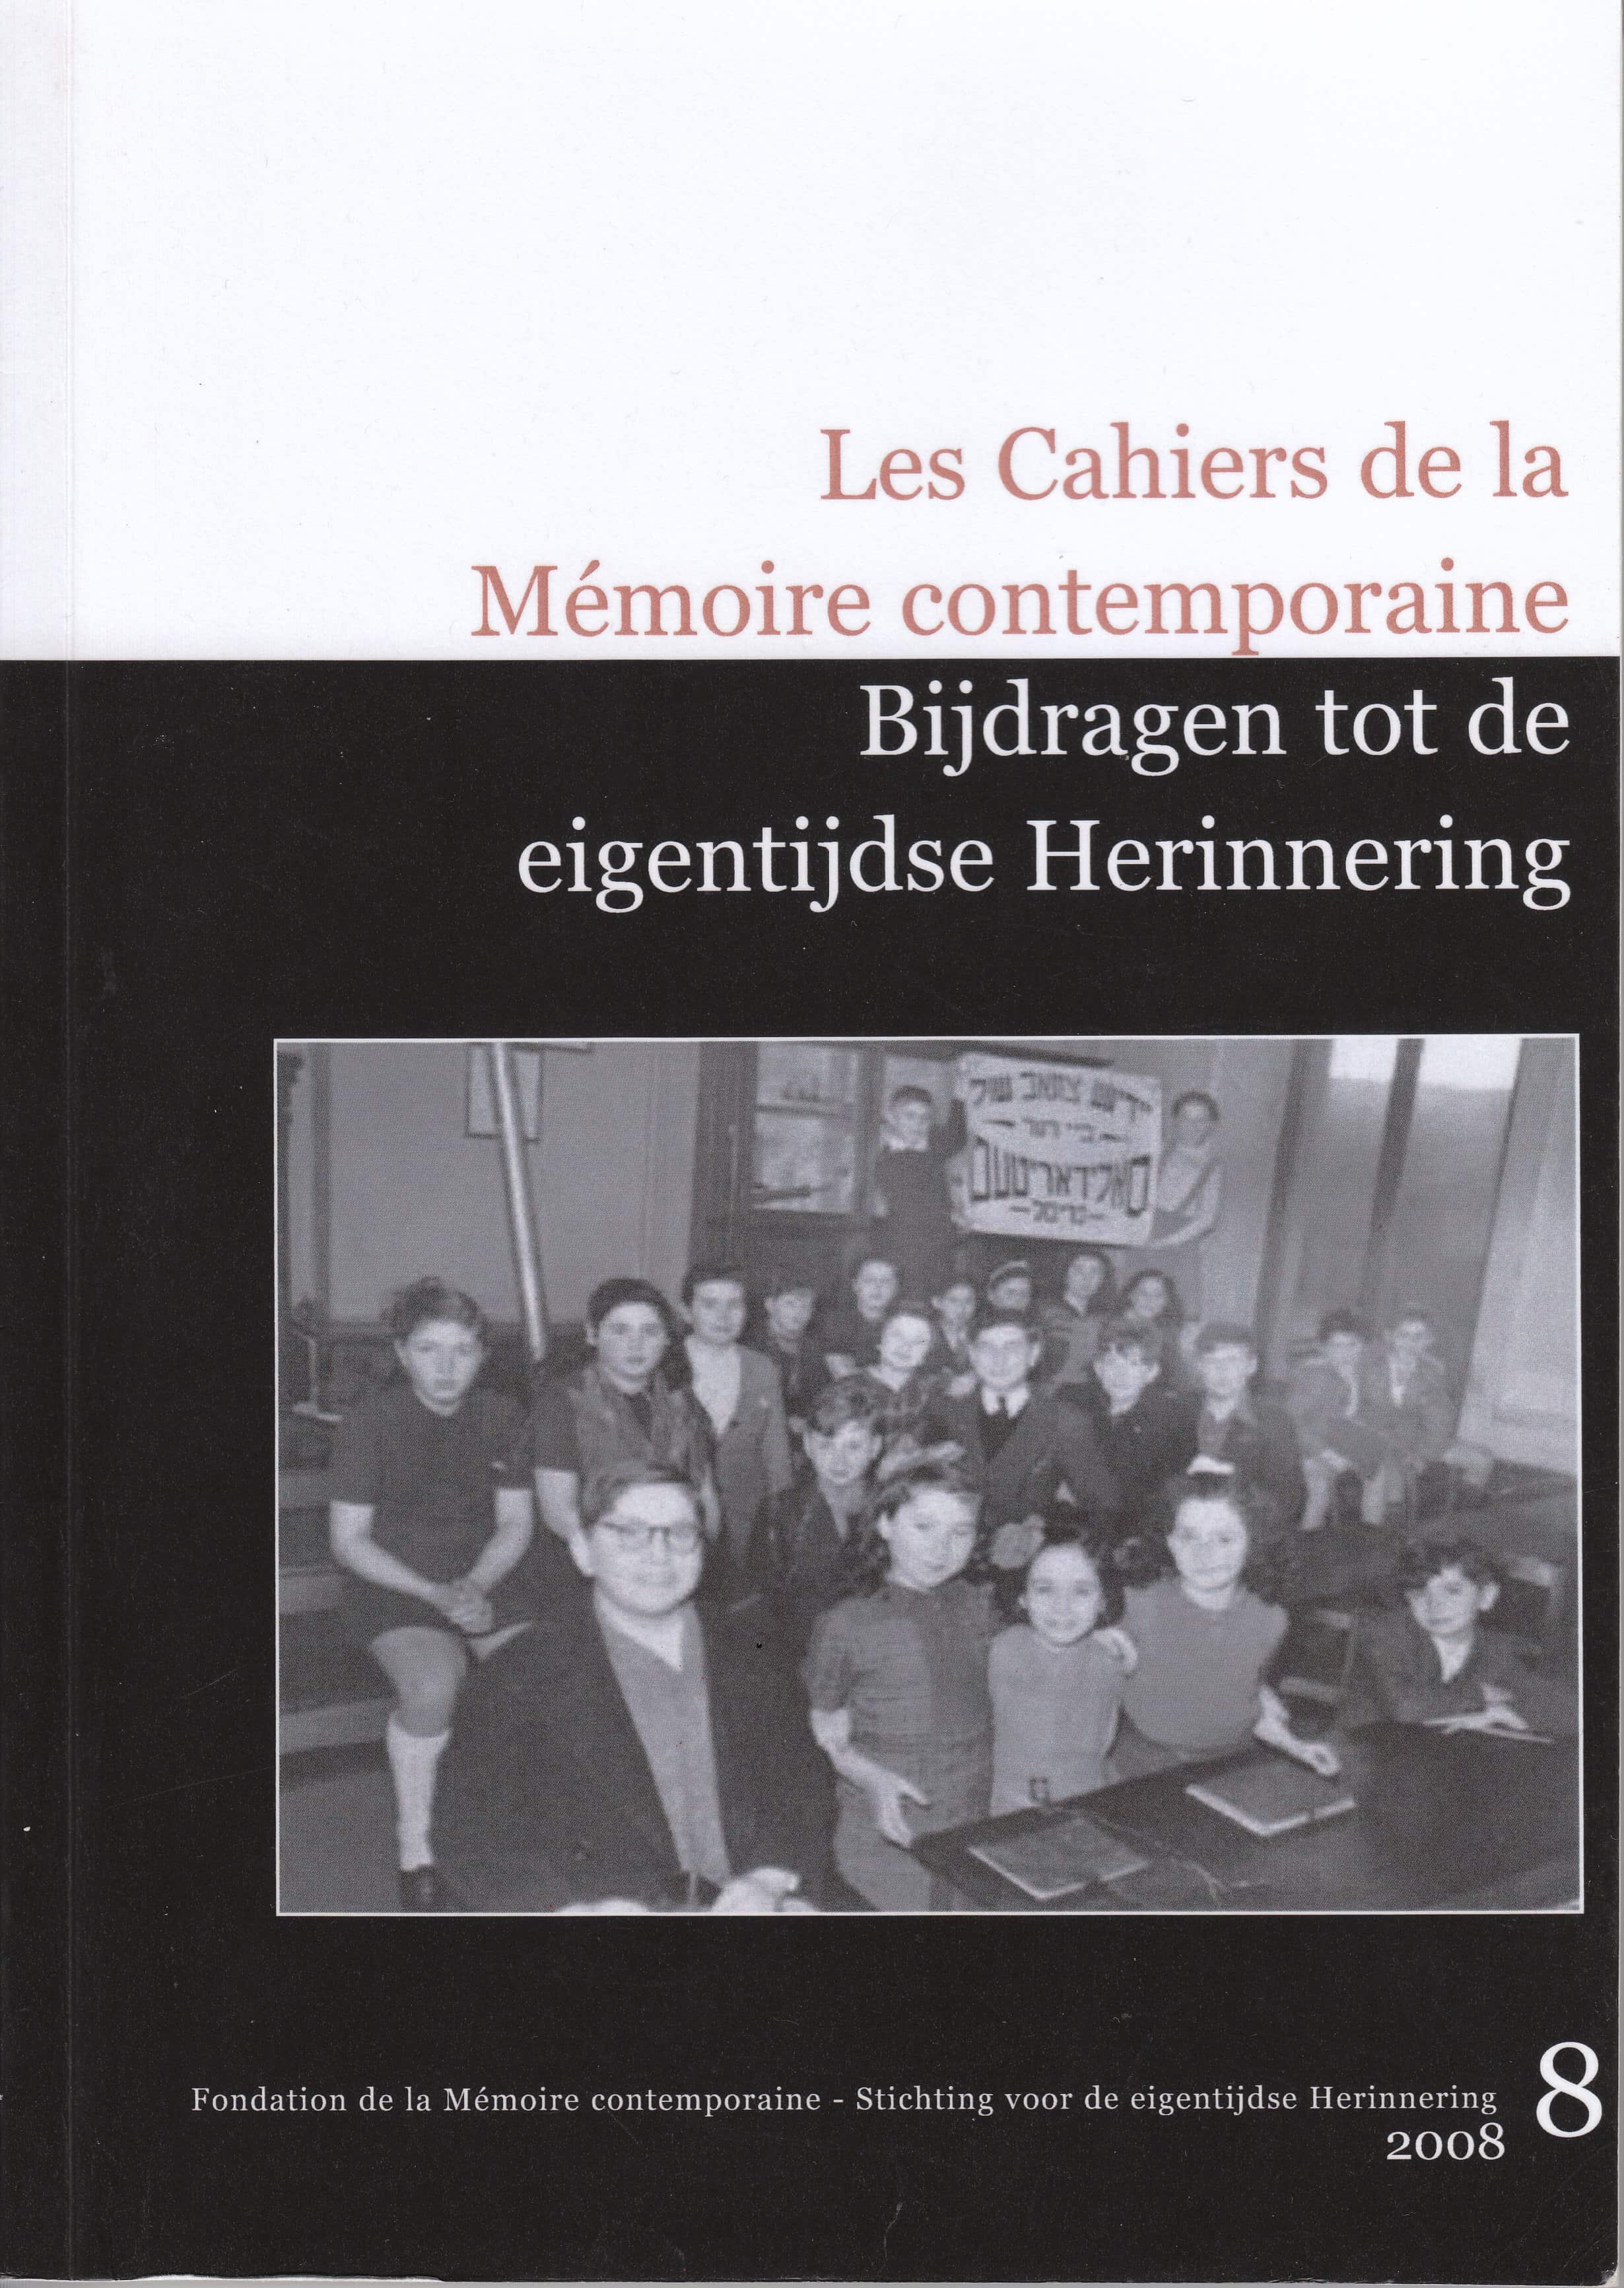 Les Cahiers de la Mémoire Contemporaine 8-2008